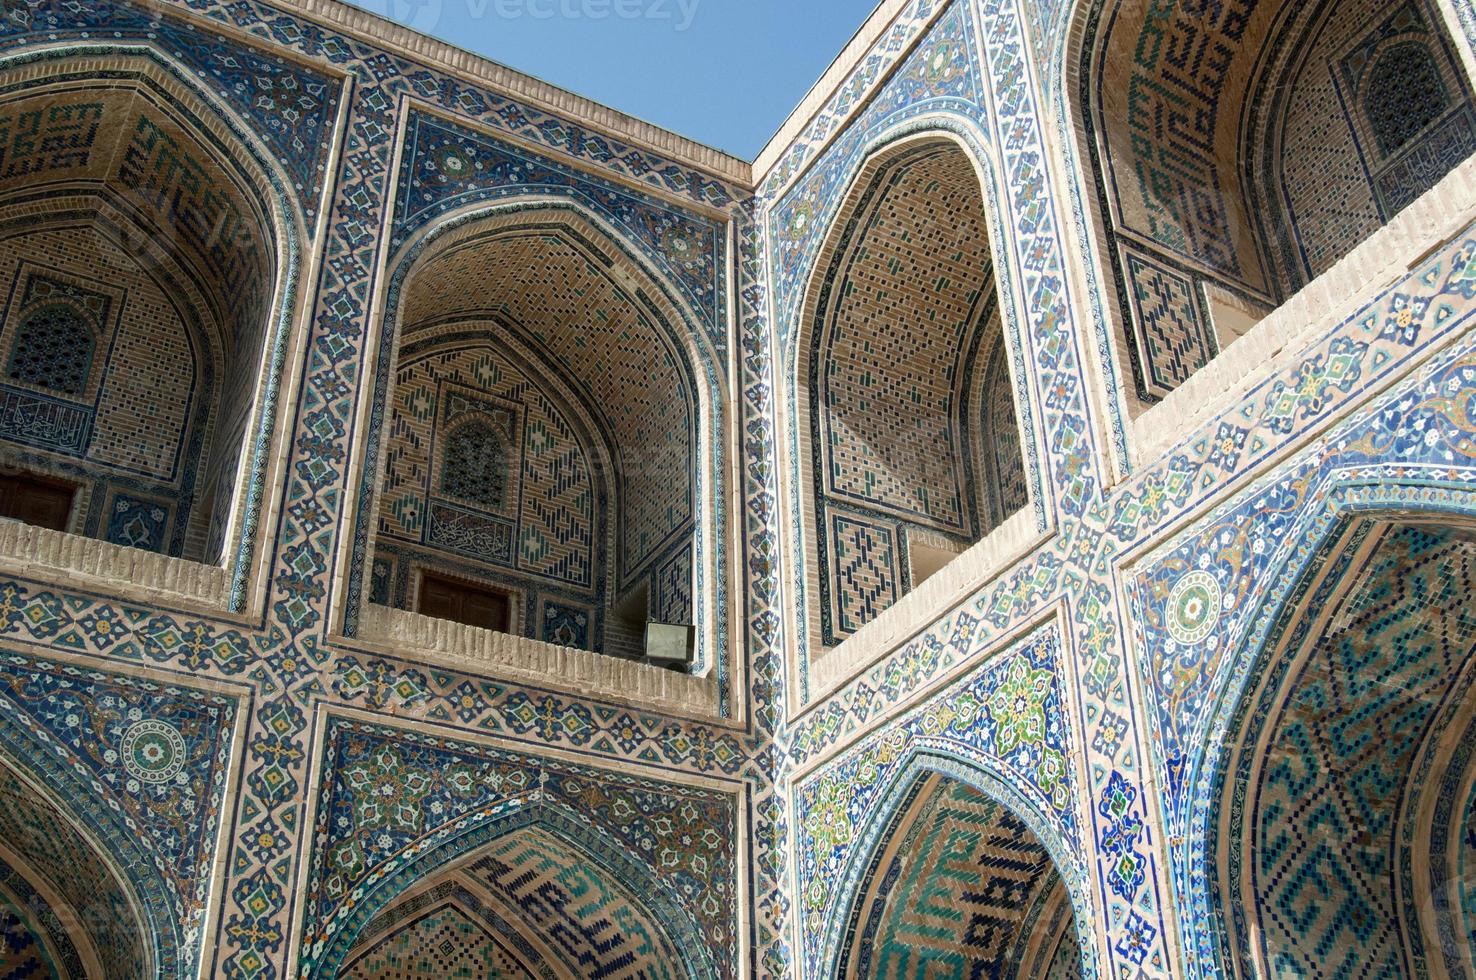 der bogen und die äußere gestaltung des alten registan in samarkand. antike architektur zentralasiens foto